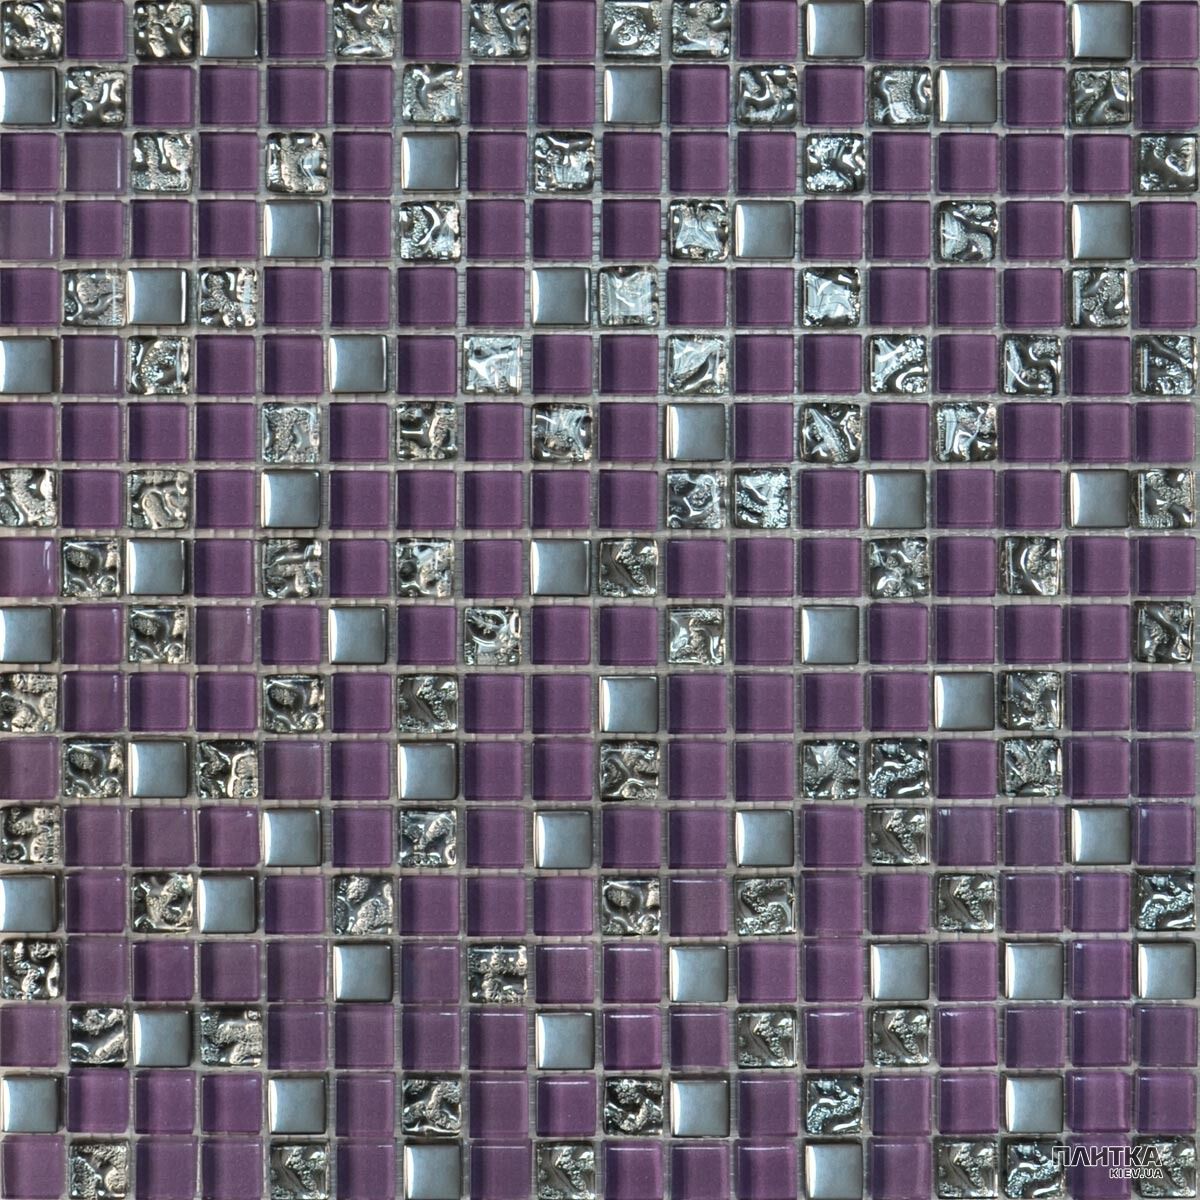 Мозаїка Grand Kerama 914 Мозаїка мікс фіолетовий-платина рифлена-платина фіолетовий,платиновий